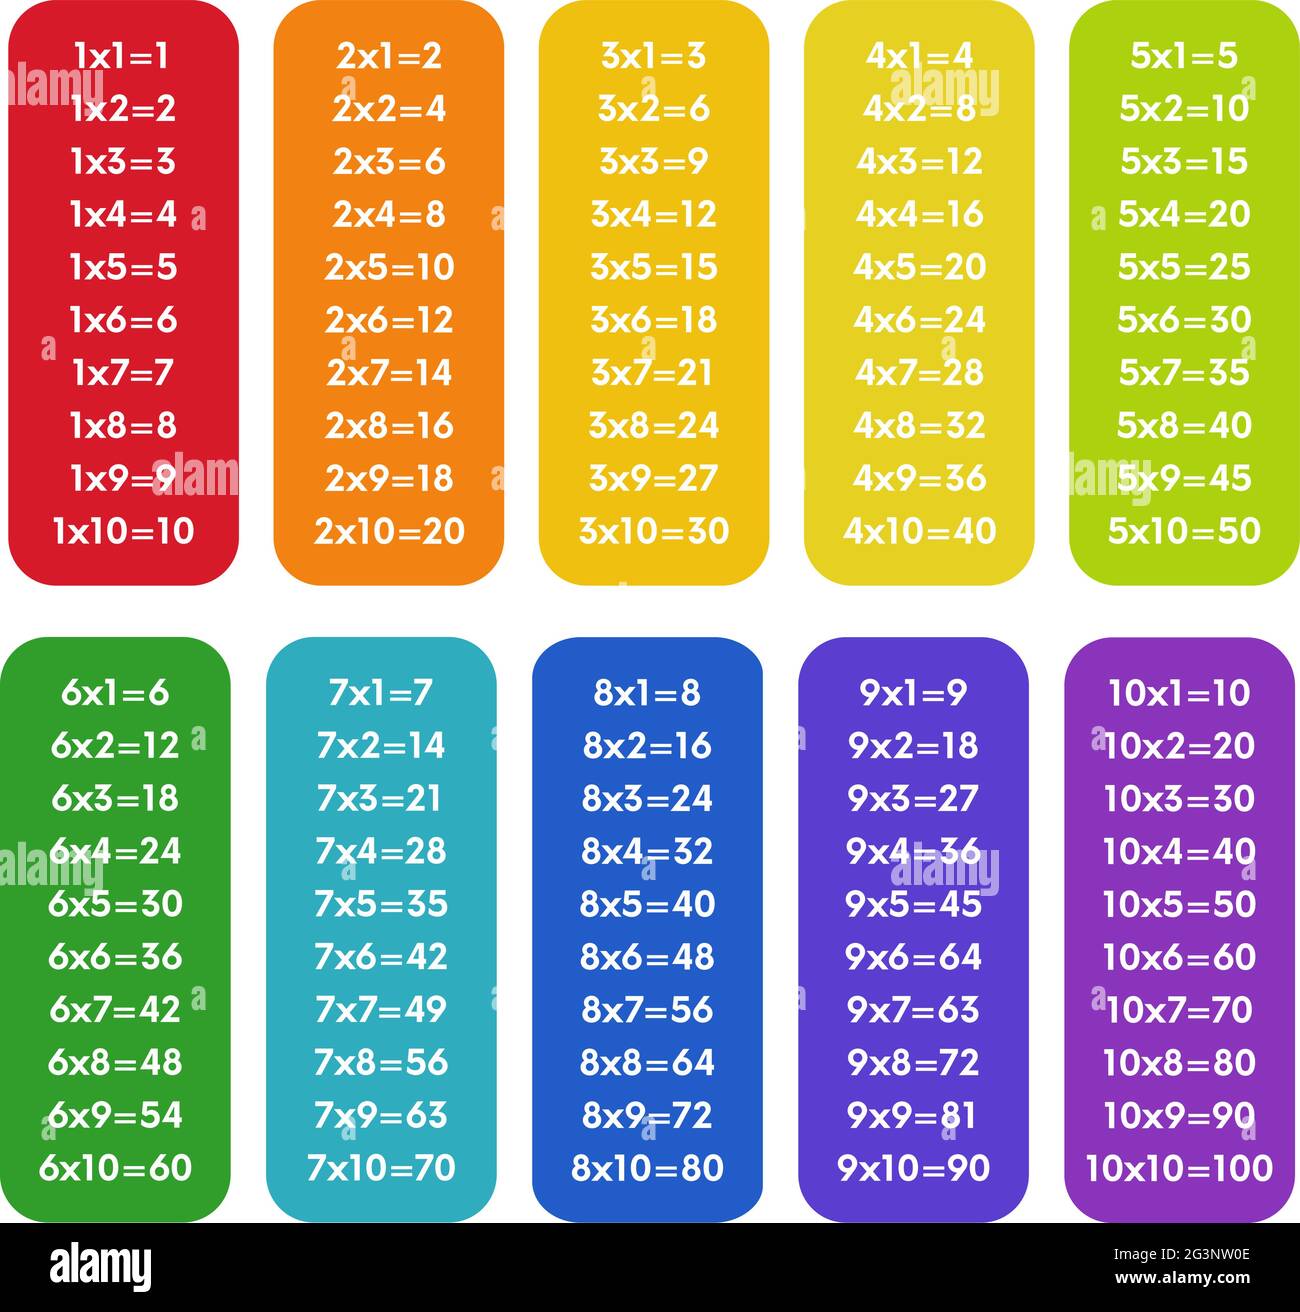 Table de multiplication colorée de 1 à 10 avec des nombres noirs. Matériel éducatif pour les élèves de niveau primaire.Illustration vectorielle. Illustration de Vecteur